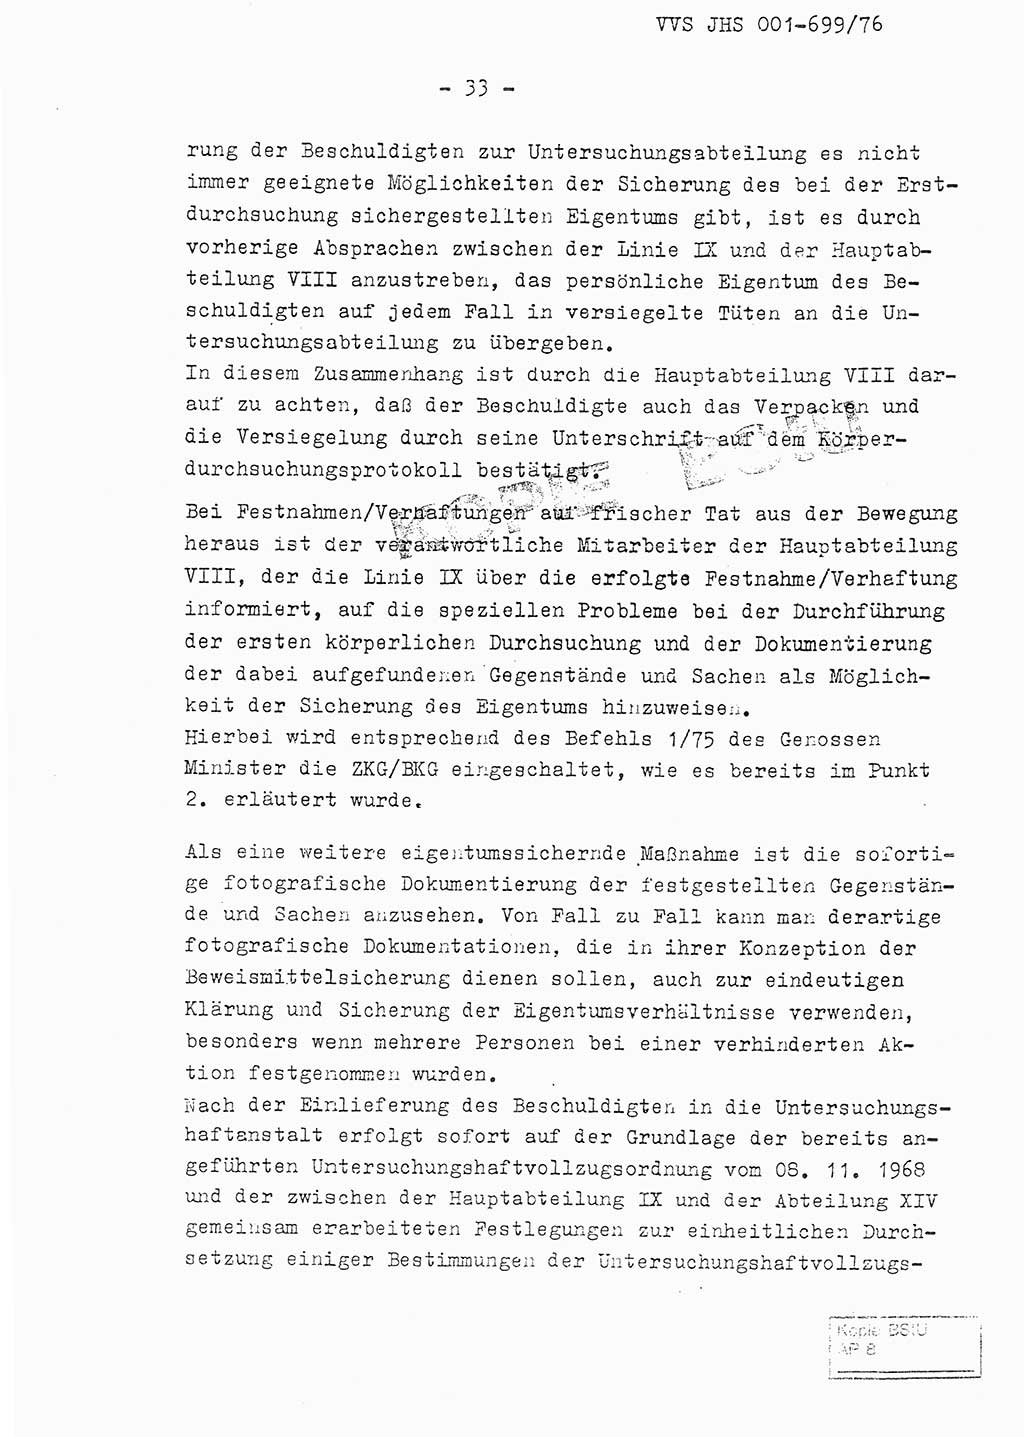 Fachschulabschlußarbeit Leutnant Volkmar Taubert (HA Ⅸ/9), Leutnant Axel Naumann (HA Ⅸ/9), Unterleutnat Detlef Debski (HA Ⅸ/9), Ministerium für Staatssicherheit (MfS) [Deutsche Demokratische Republik (DDR)], Juristische Hochschule (JHS), Vertrauliche Verschlußsache (VVS) 001-699/76, Potsdam 1976, Seite 33 (FS-Abschl.-Arb. MfS DDR JHS VVS 001-699/76 1976, S. 33)